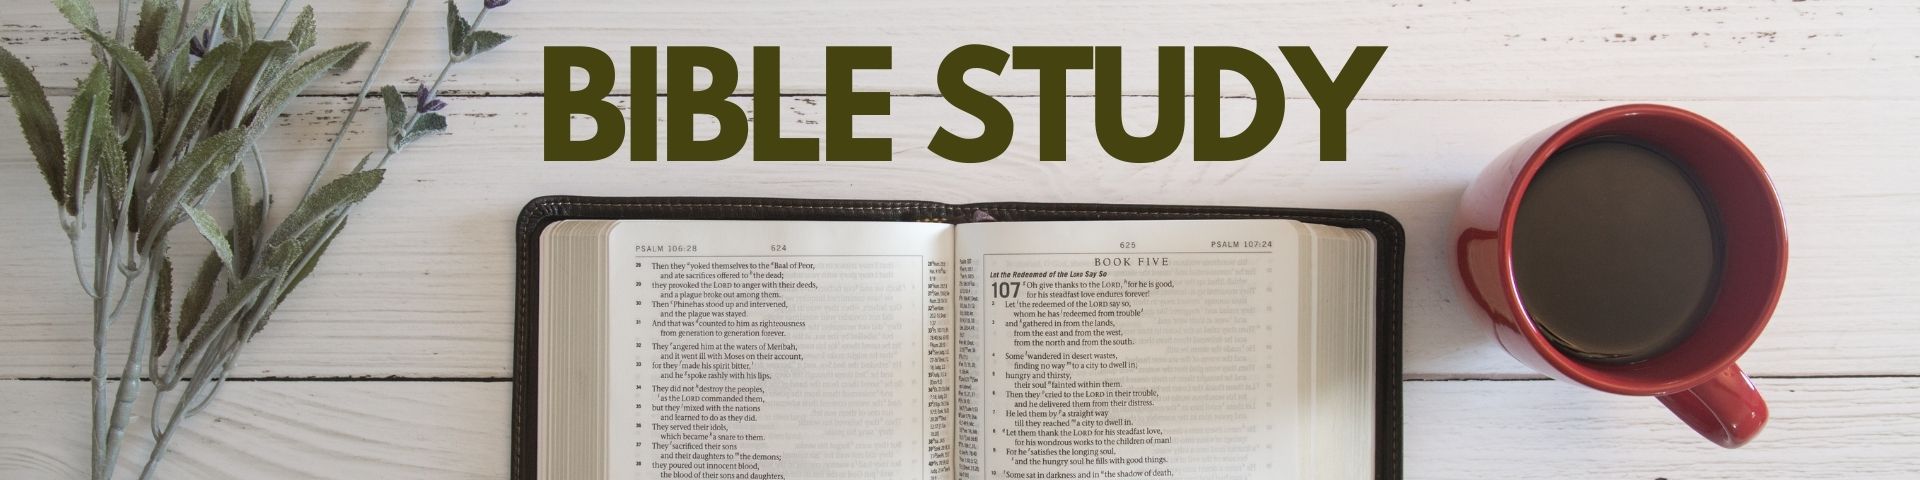 bible_study.jpg